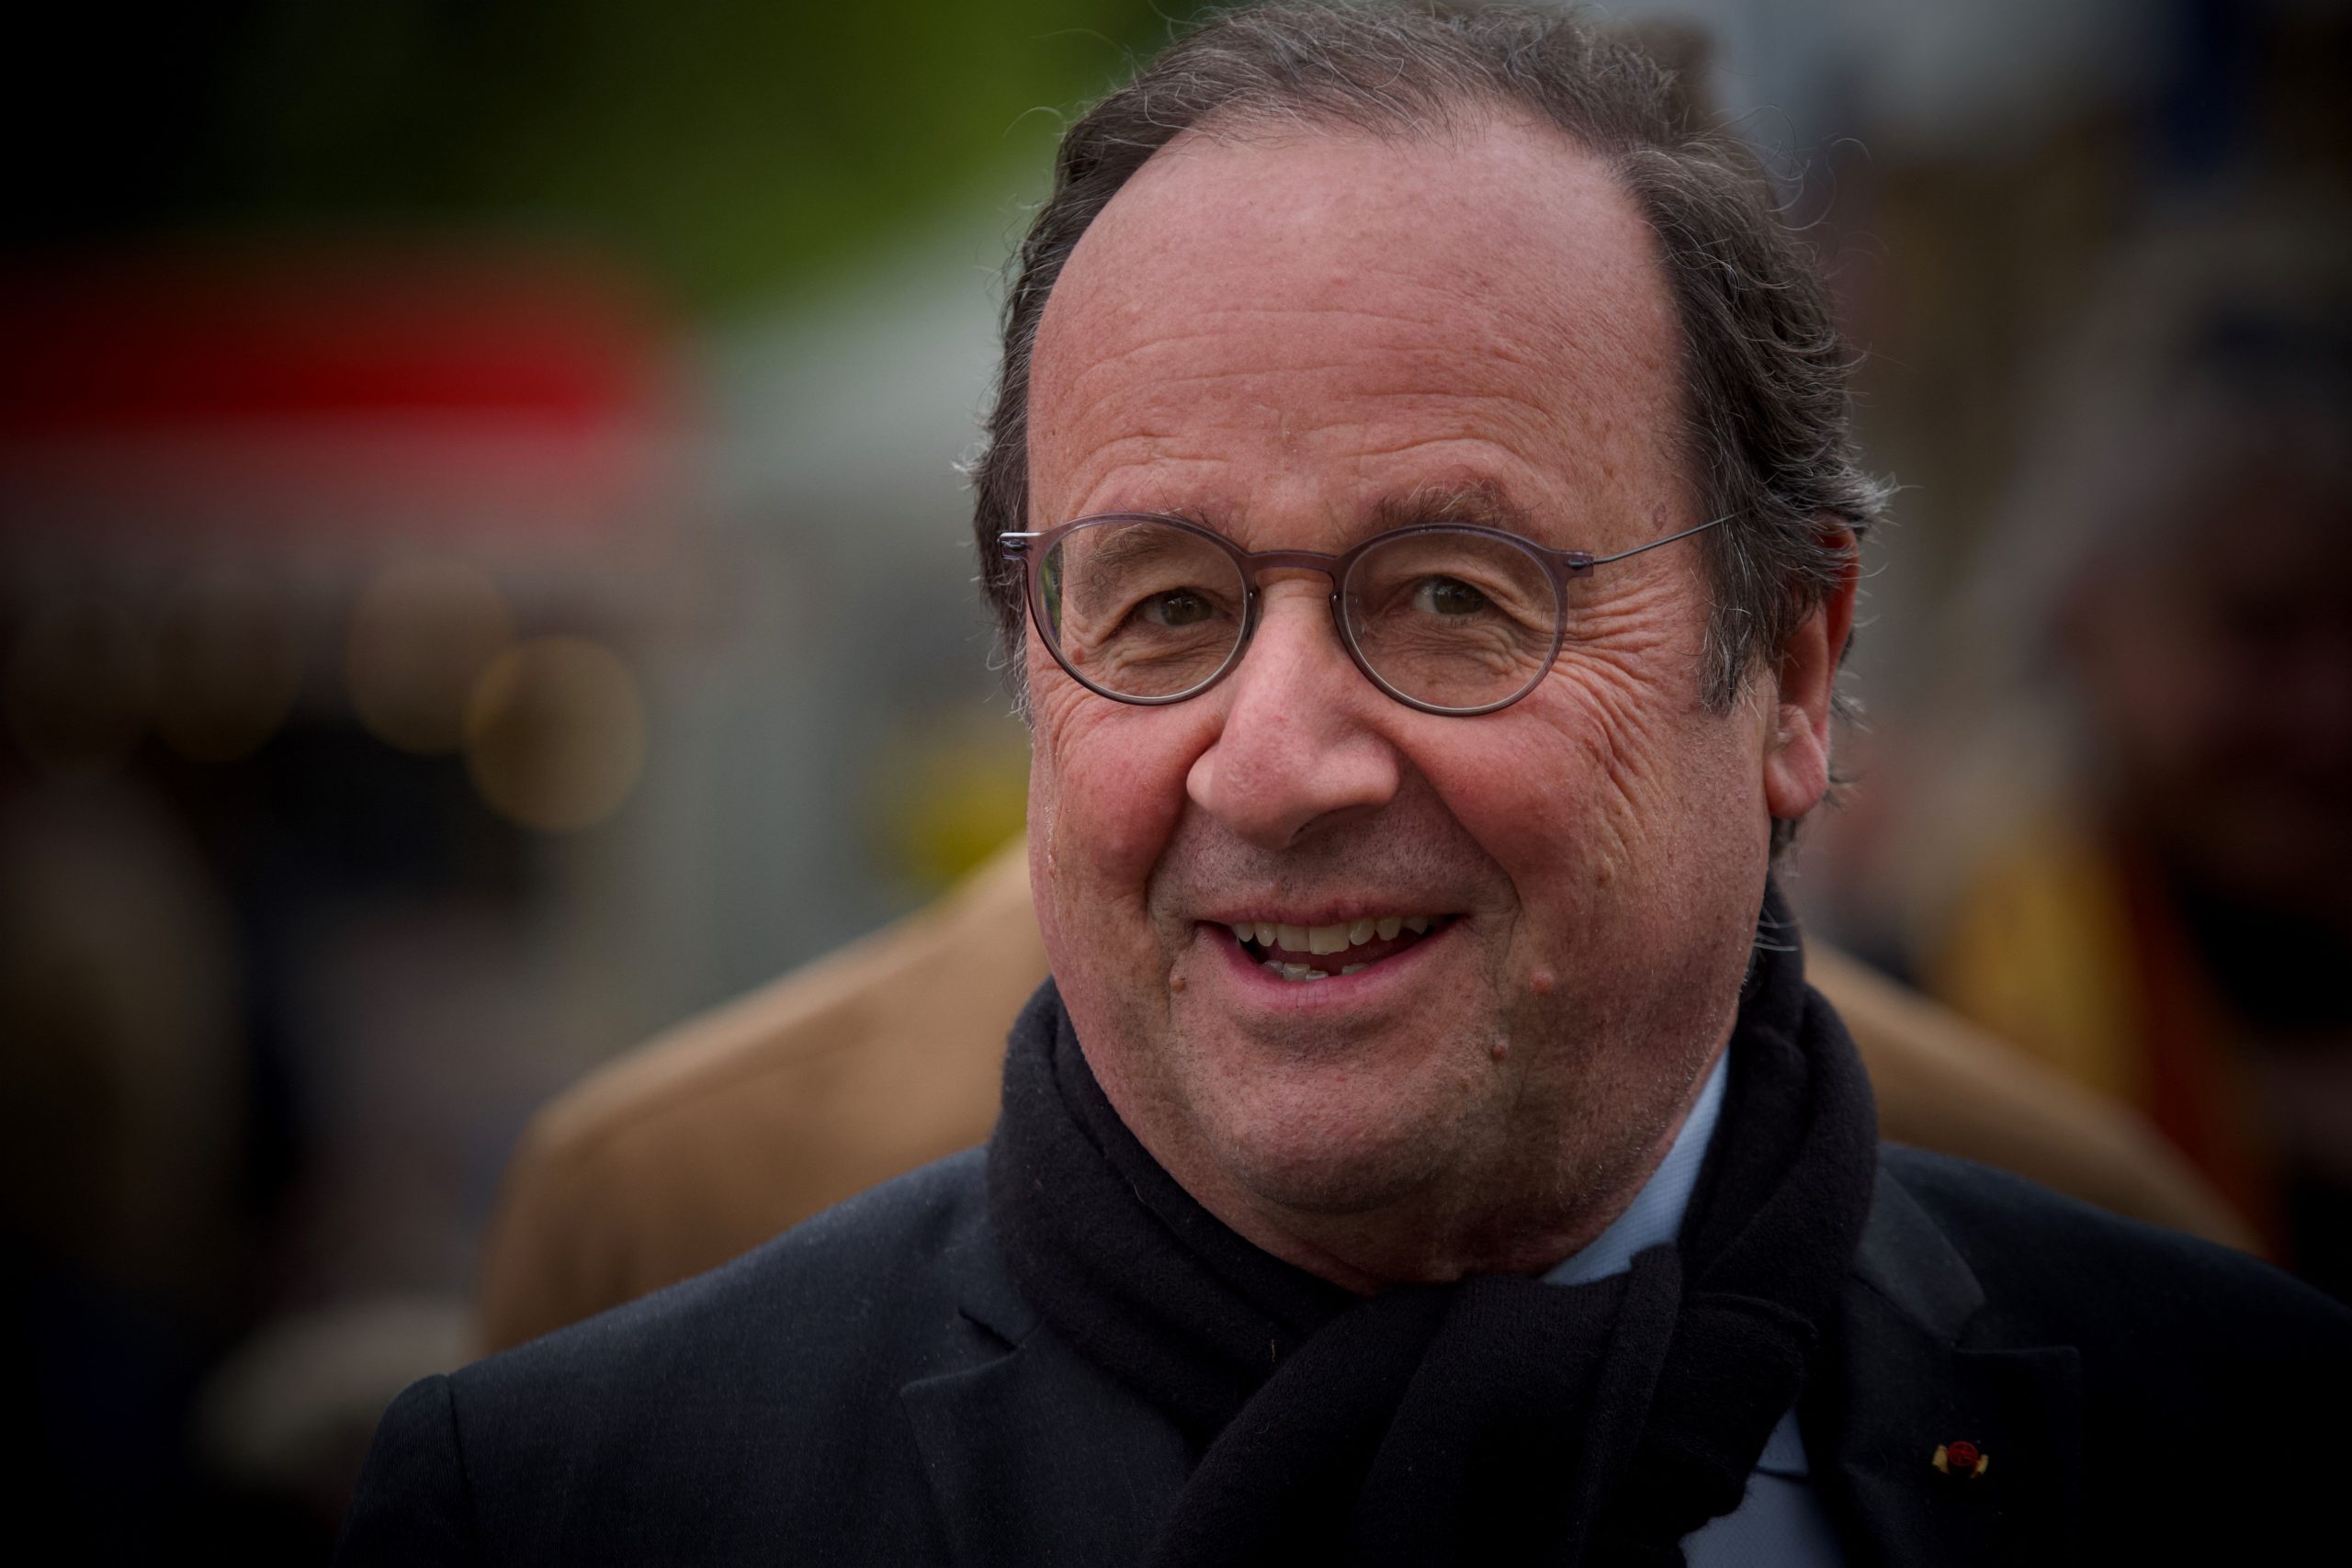 François Holland candidato às legislativas em França